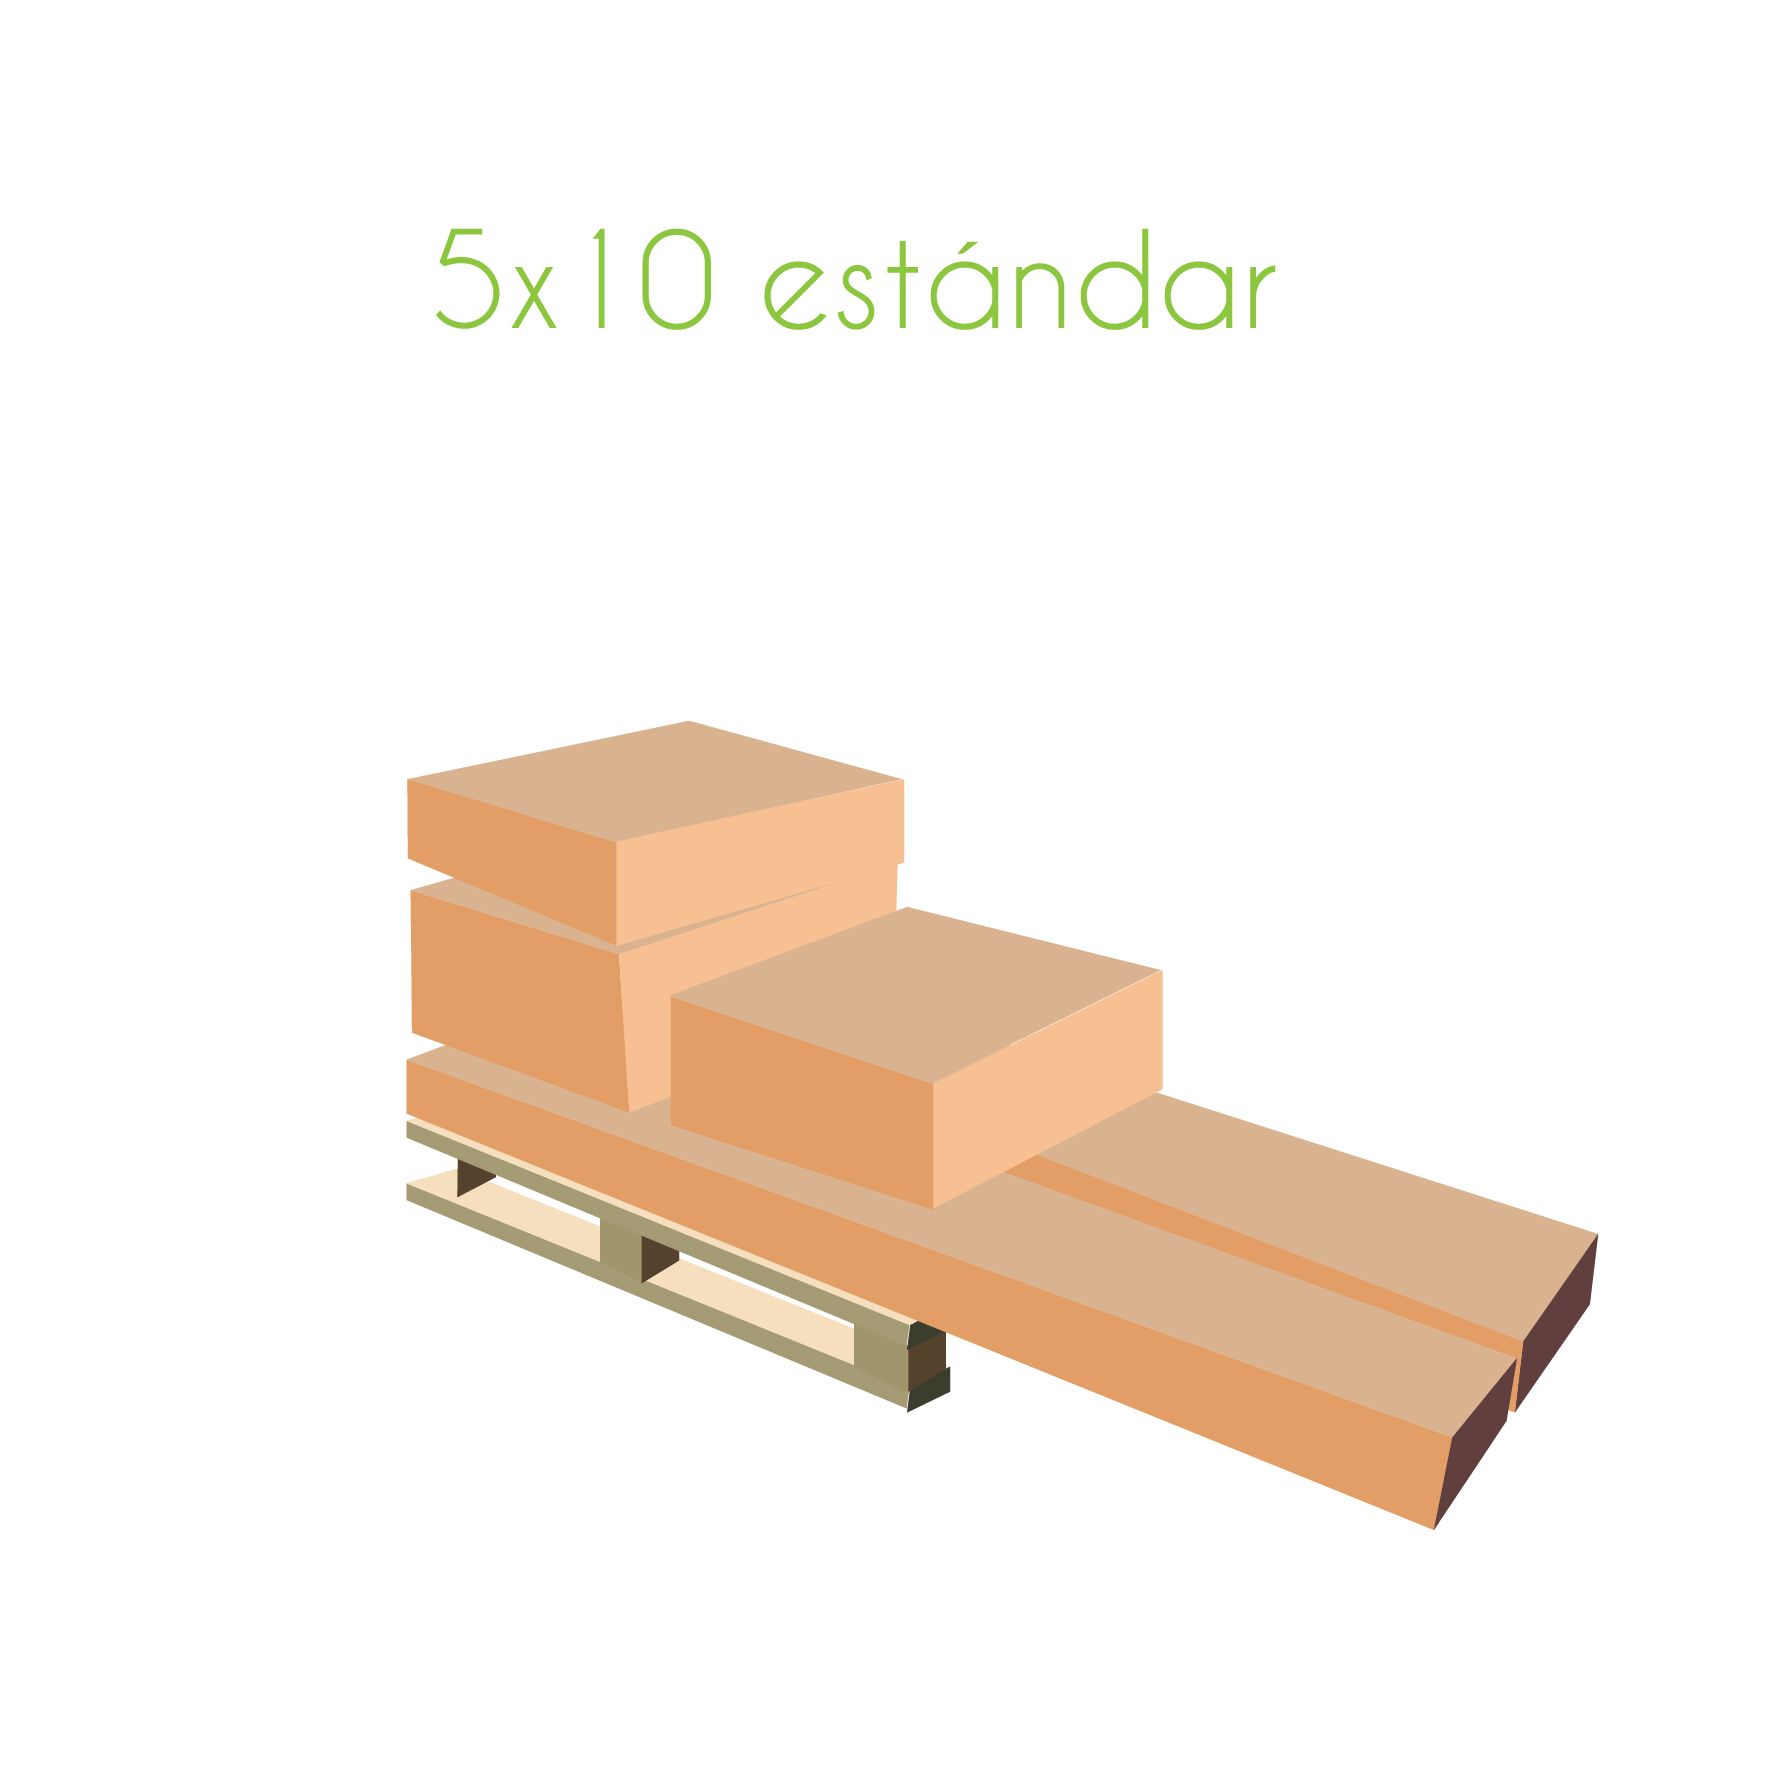 paletización carpa 5x10 estándar